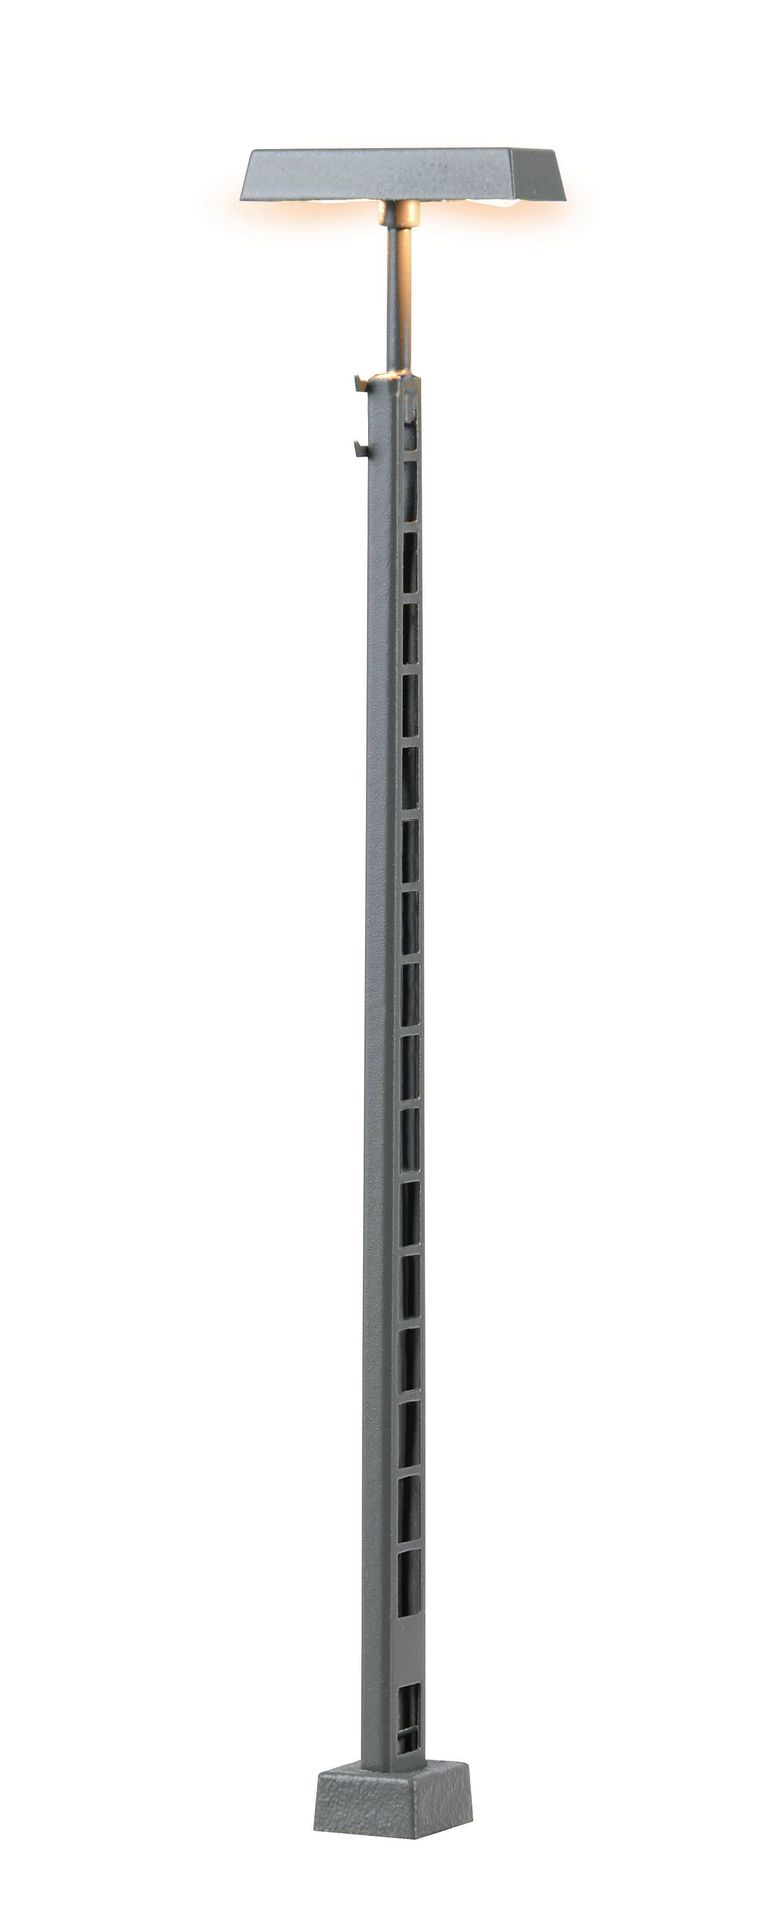 Viessmann 6963 - Gittermastleuchte, 2 LEDs weiß TT 1:120